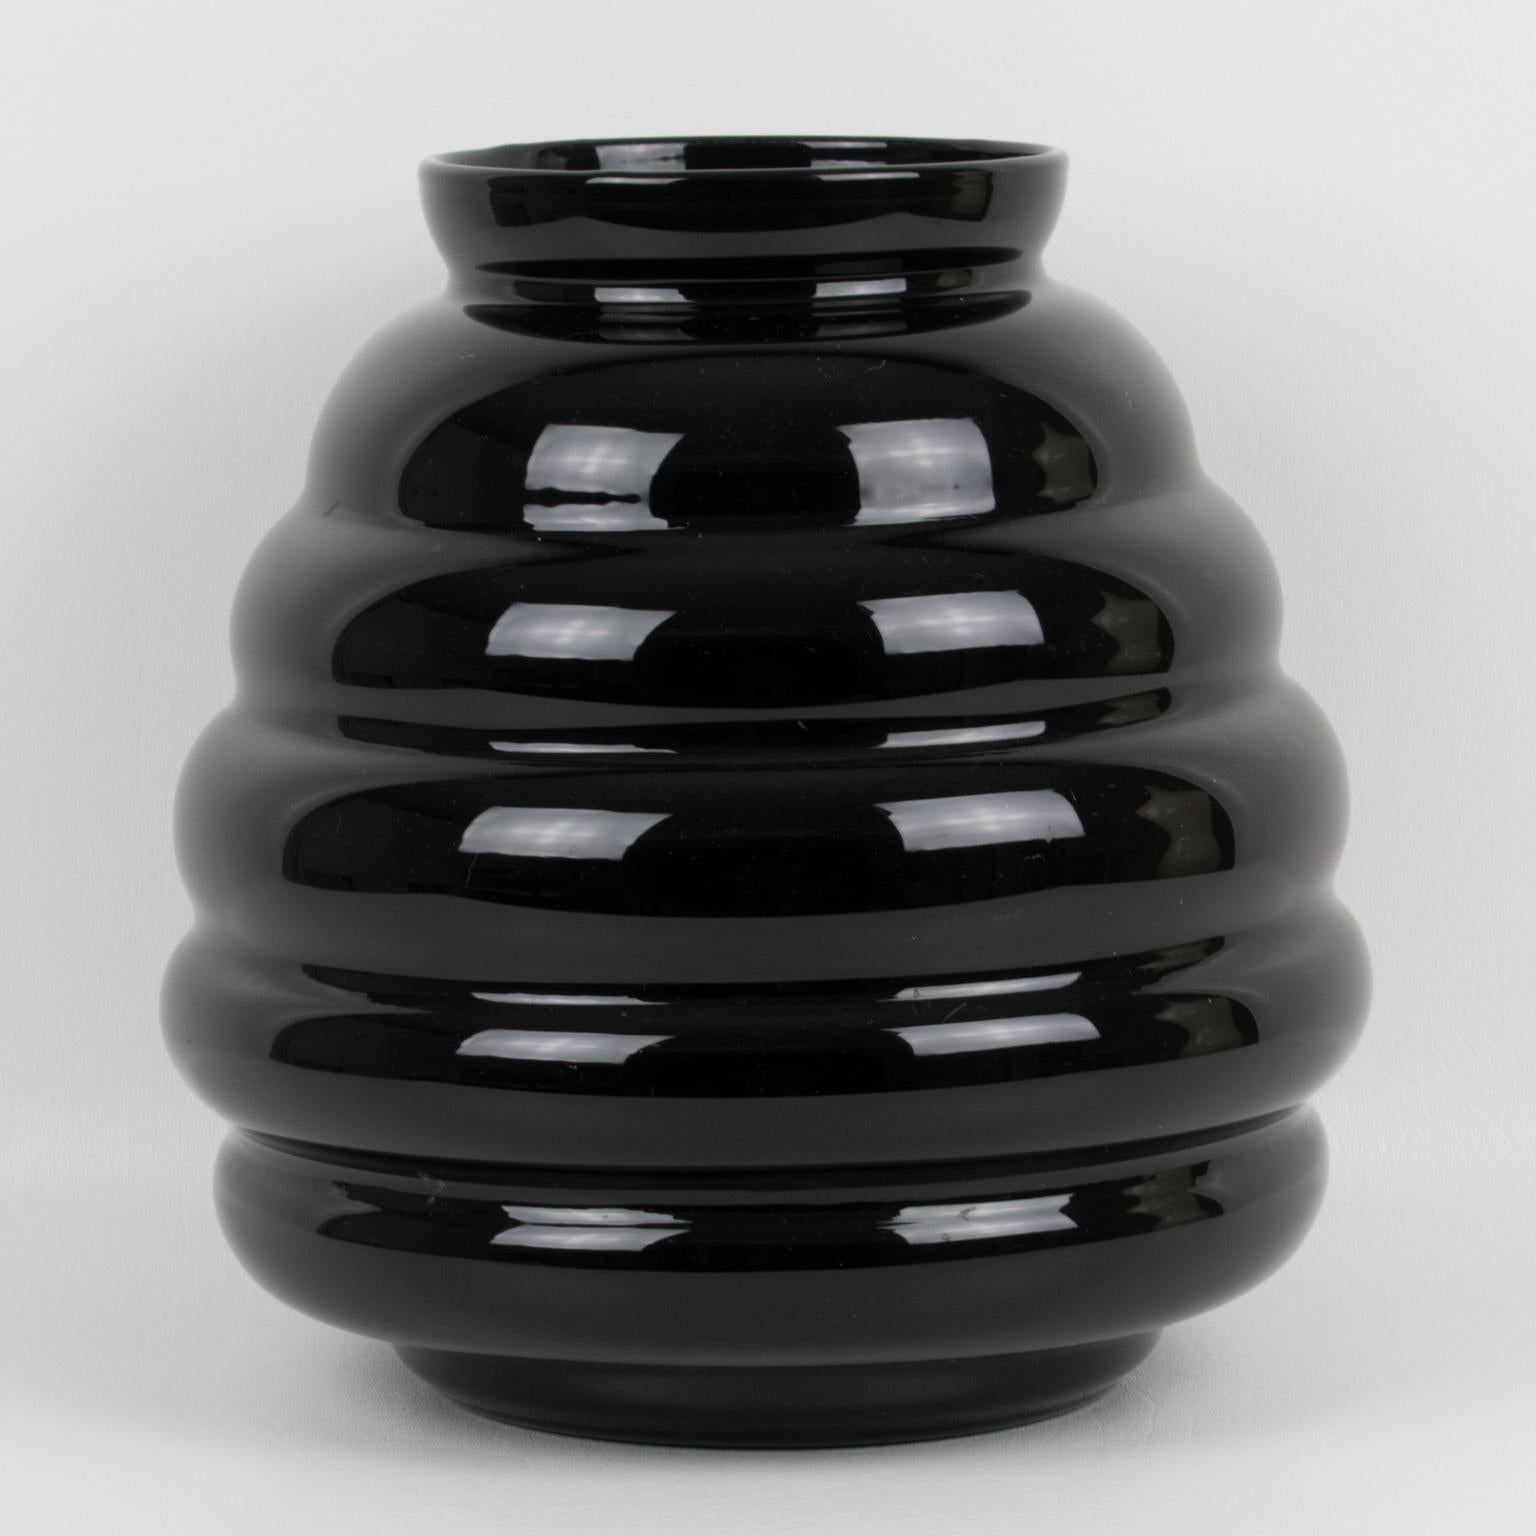 Diese wunderbare Vase aus schwarzem Opalglas wurde in den 1950er Jahren in Belgien handgefertigt. Das massive, abgerundete Design zeichnet sich durch eine Gadroonform aus. Das Stück ist auf der Unterseite gekennzeichnet: Ver Extra Fort - importé de